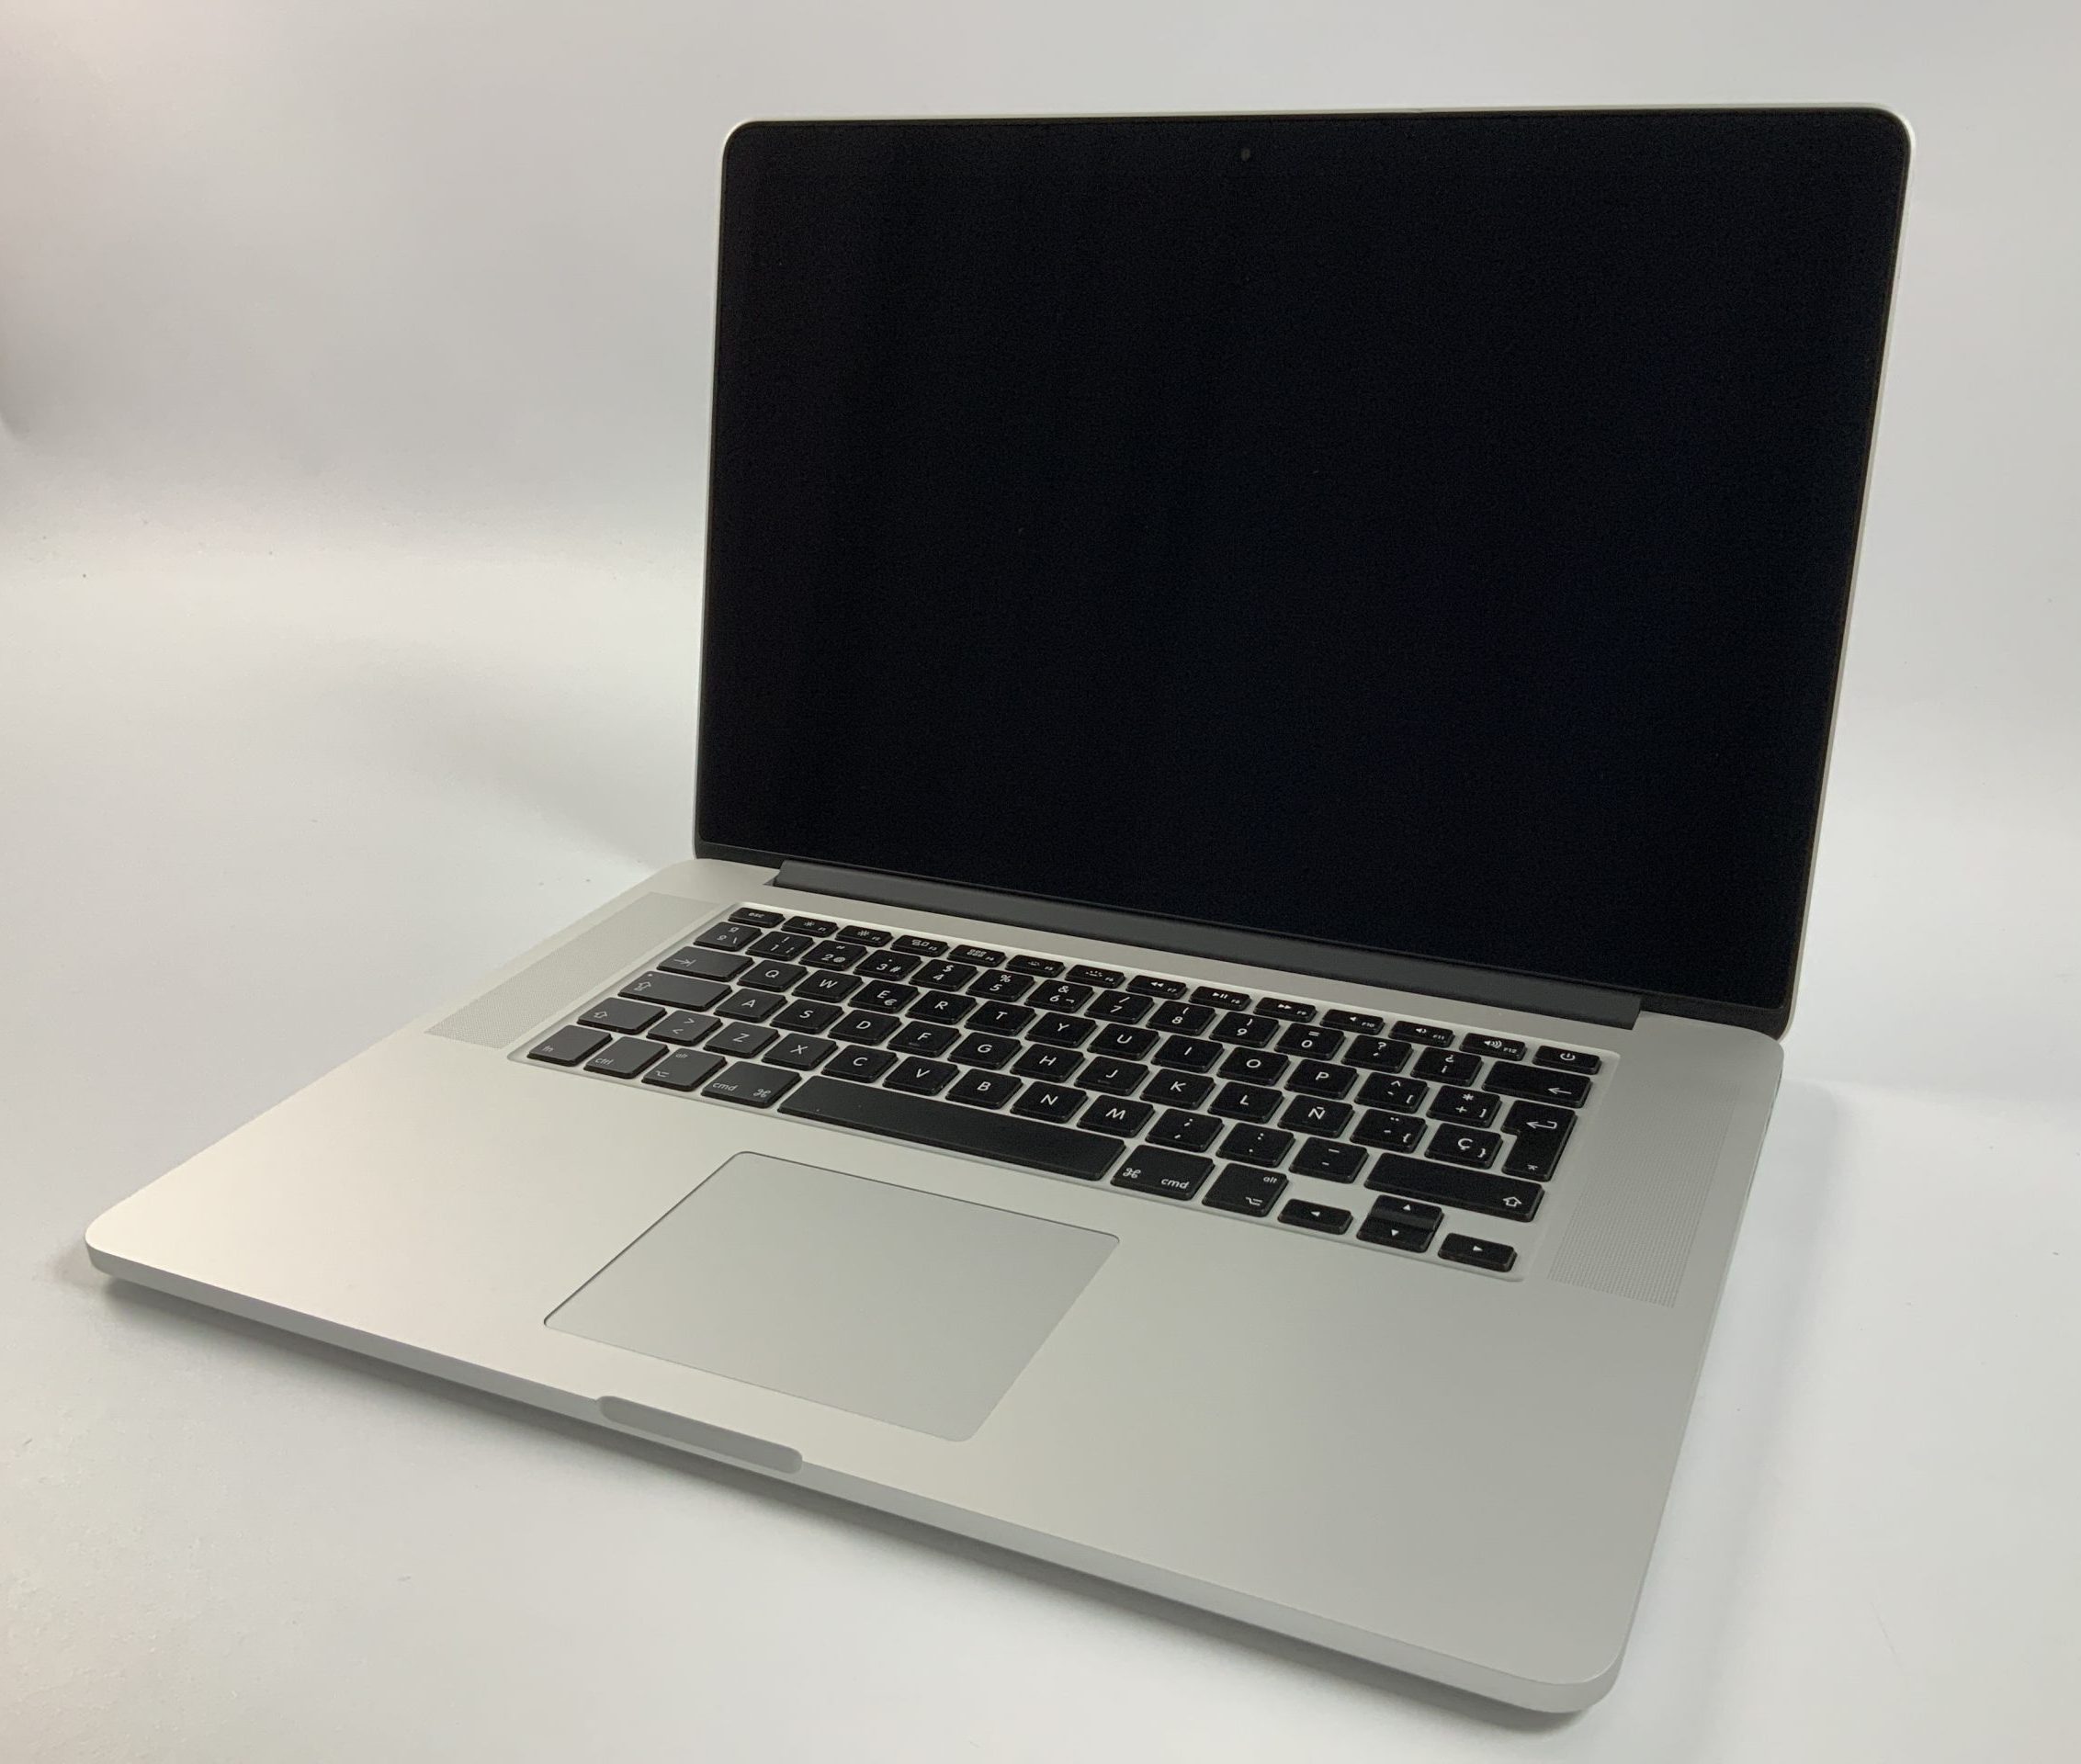 MacBook Pro Retina 15" Mid 2014 (Intel Quad-Core i7 2.5 GHz 16 GB RAM 512 GB SSD), Intel Quad-Core i7 2.5 GHz, 16 GB RAM, 512 GB SSD, obraz 1